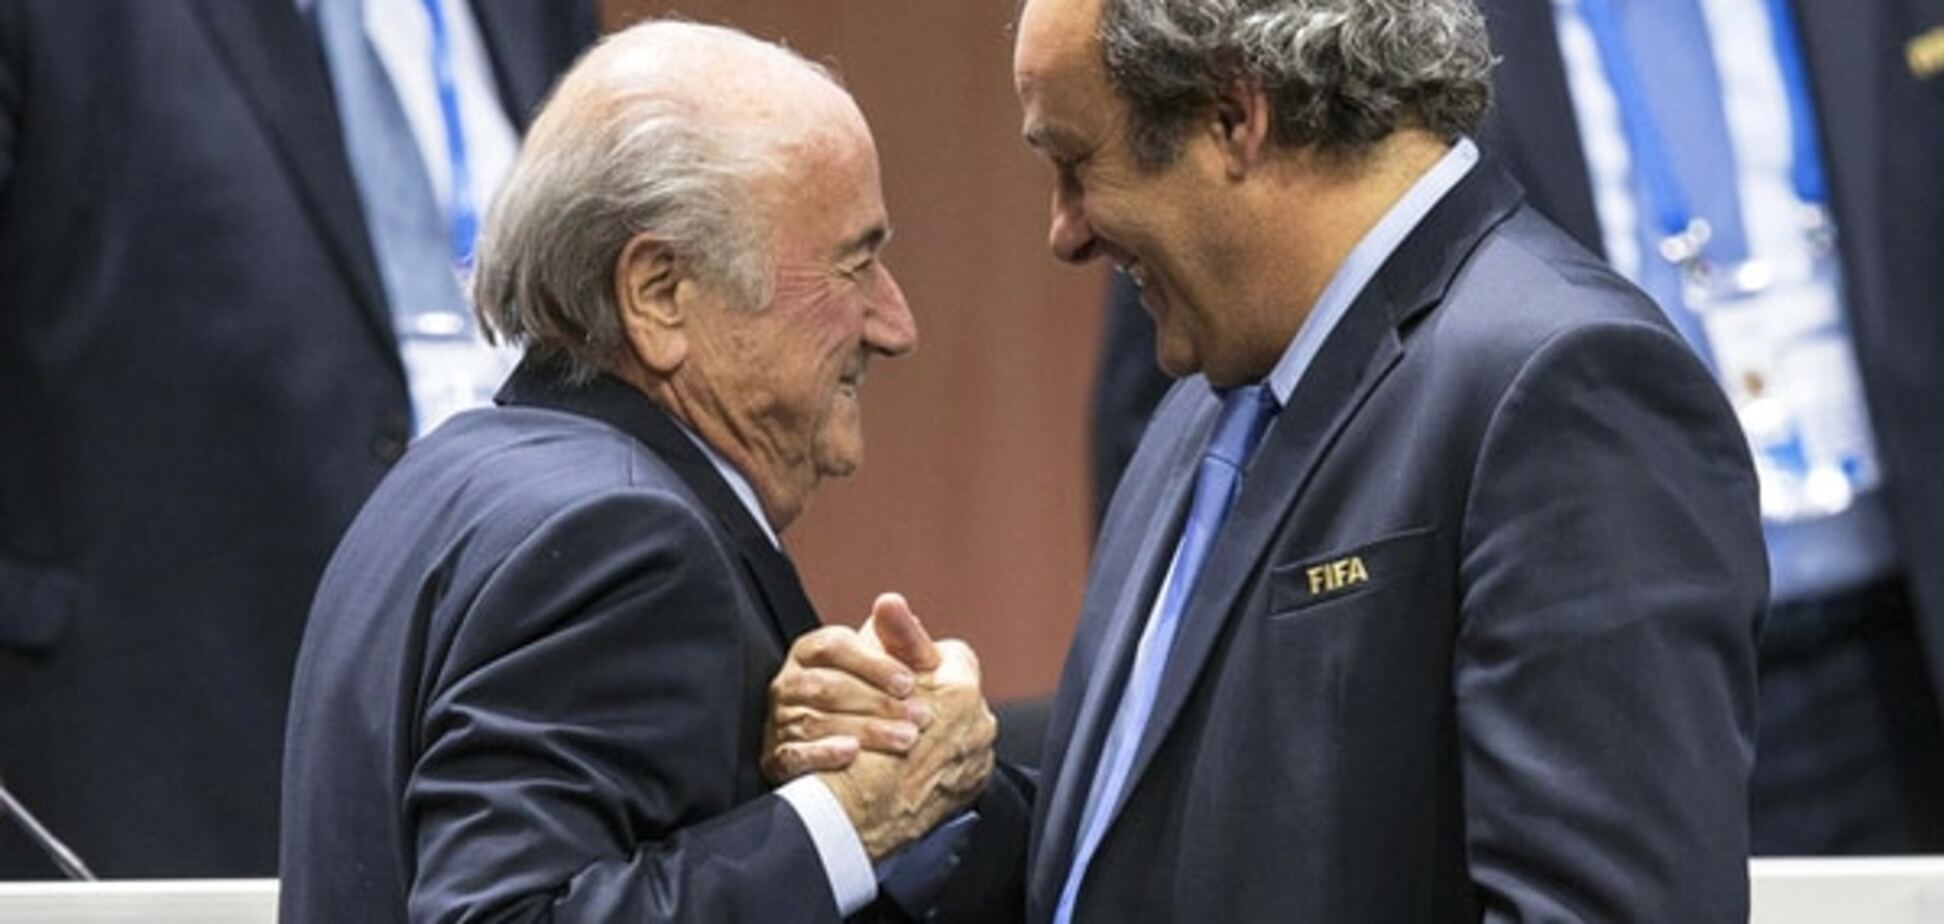 Семь лет без футбола: Блаттера и Платини серьезно накажут за коррупцию в ФИФА